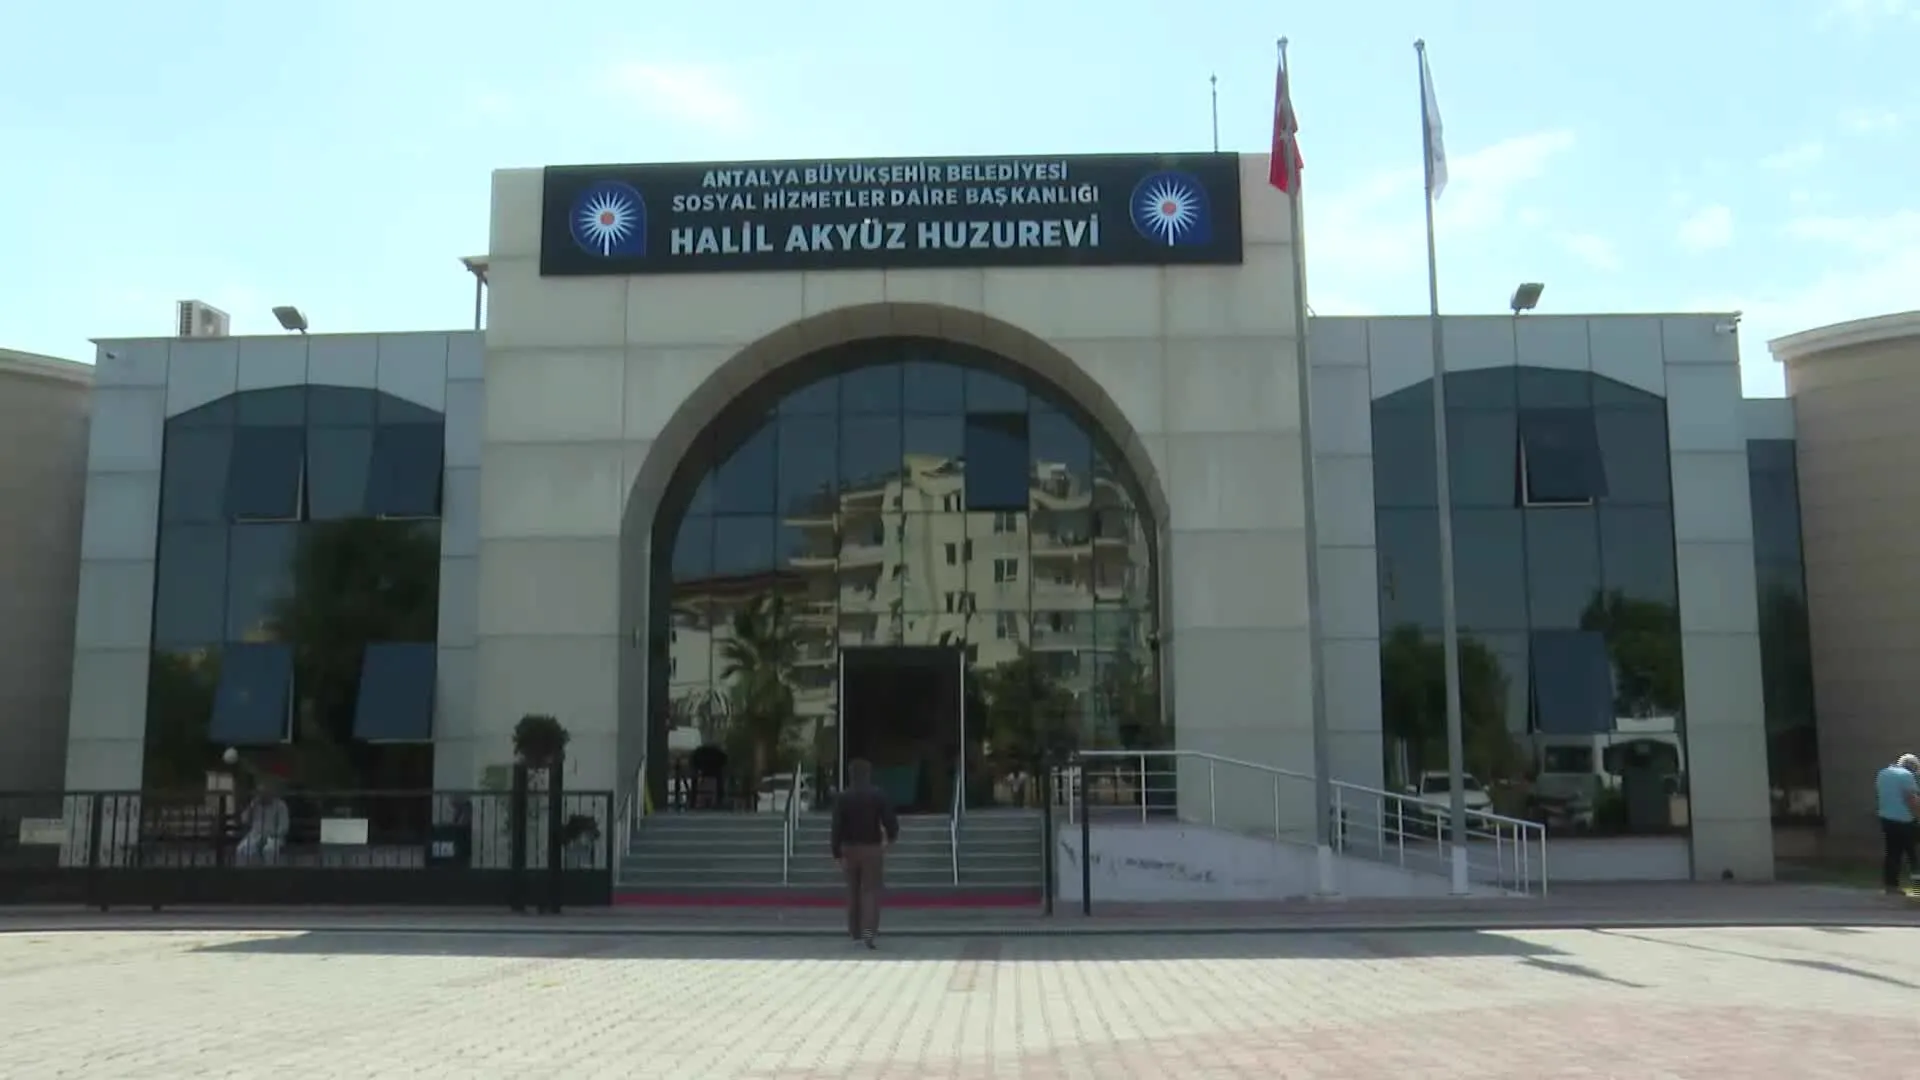 Halil Akyuz Huzurevi